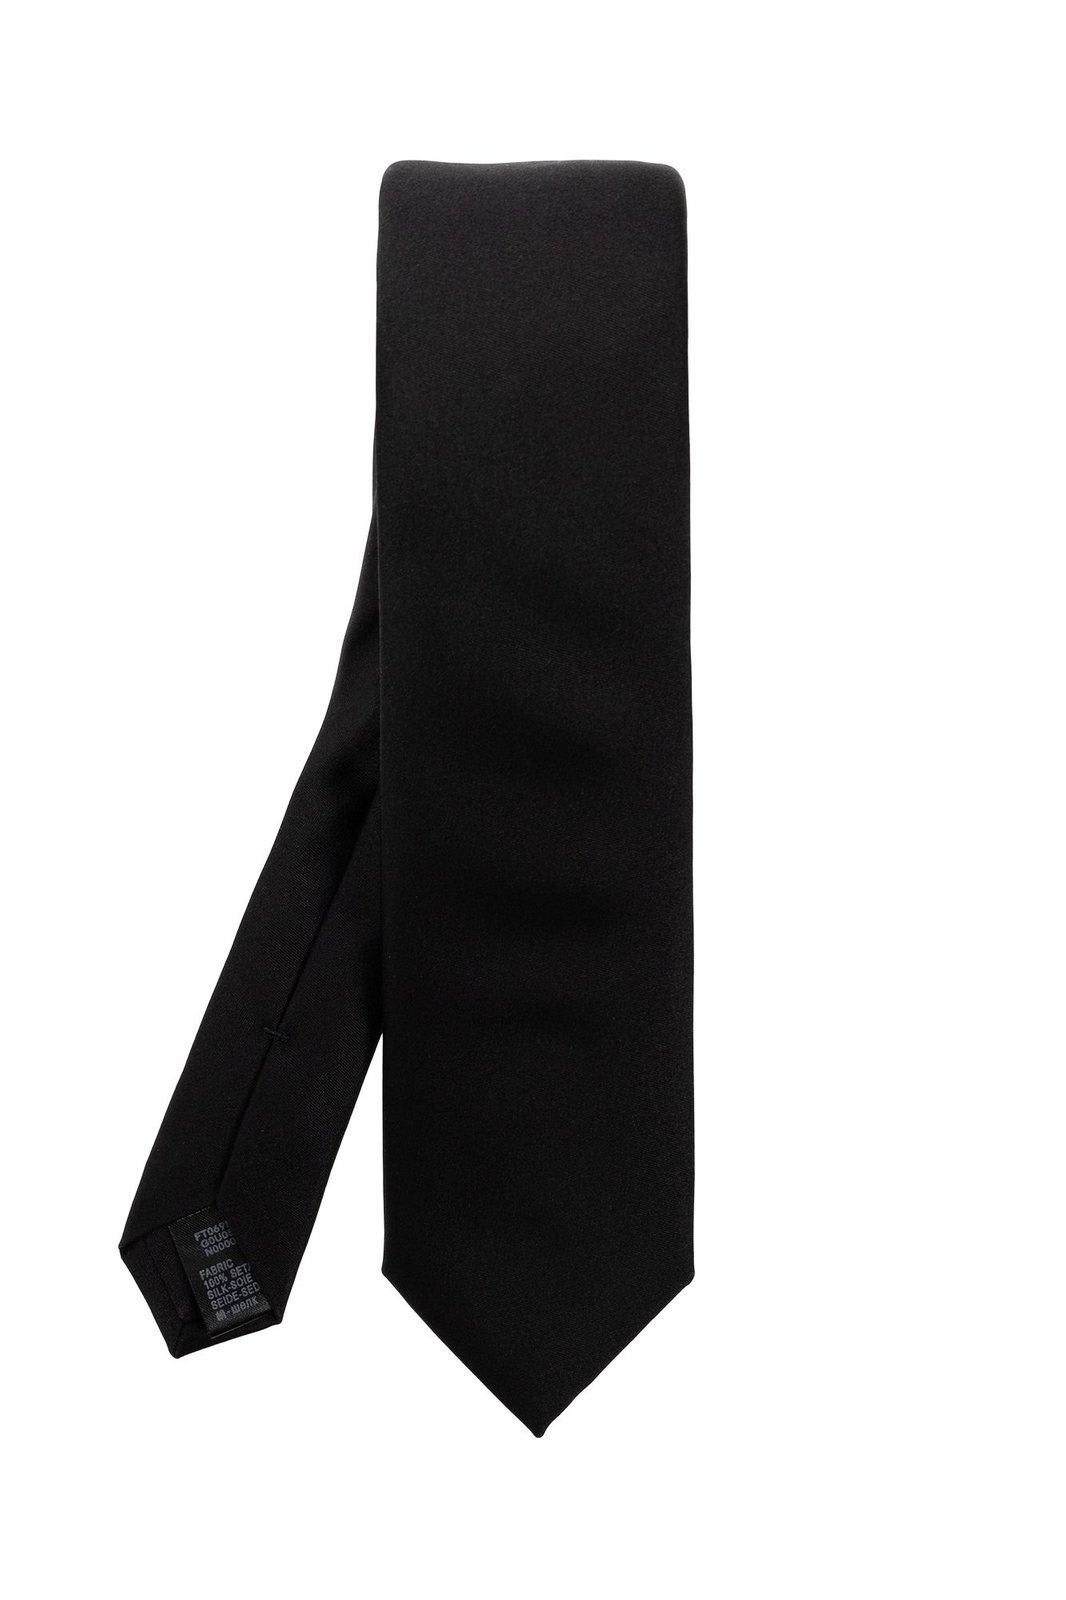 Solid Black Pure Silk Tie